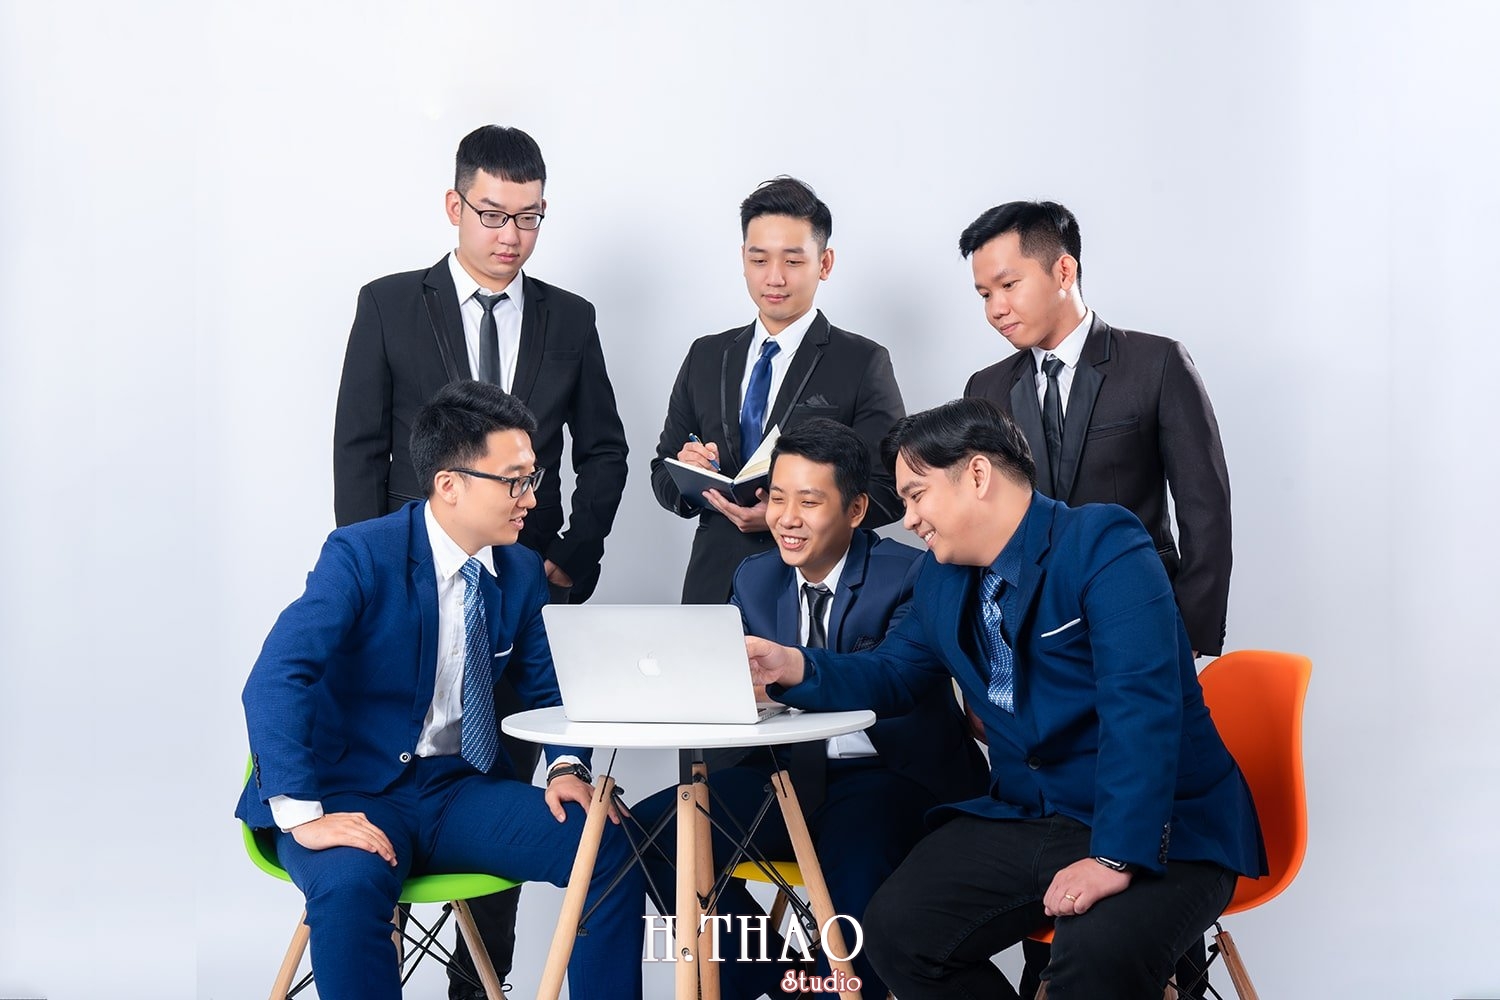 Anh profile cong ty 2 - Tổng hợp ảnh đẹp doanh nhân, profile, art tháng 4 – HThao Studio